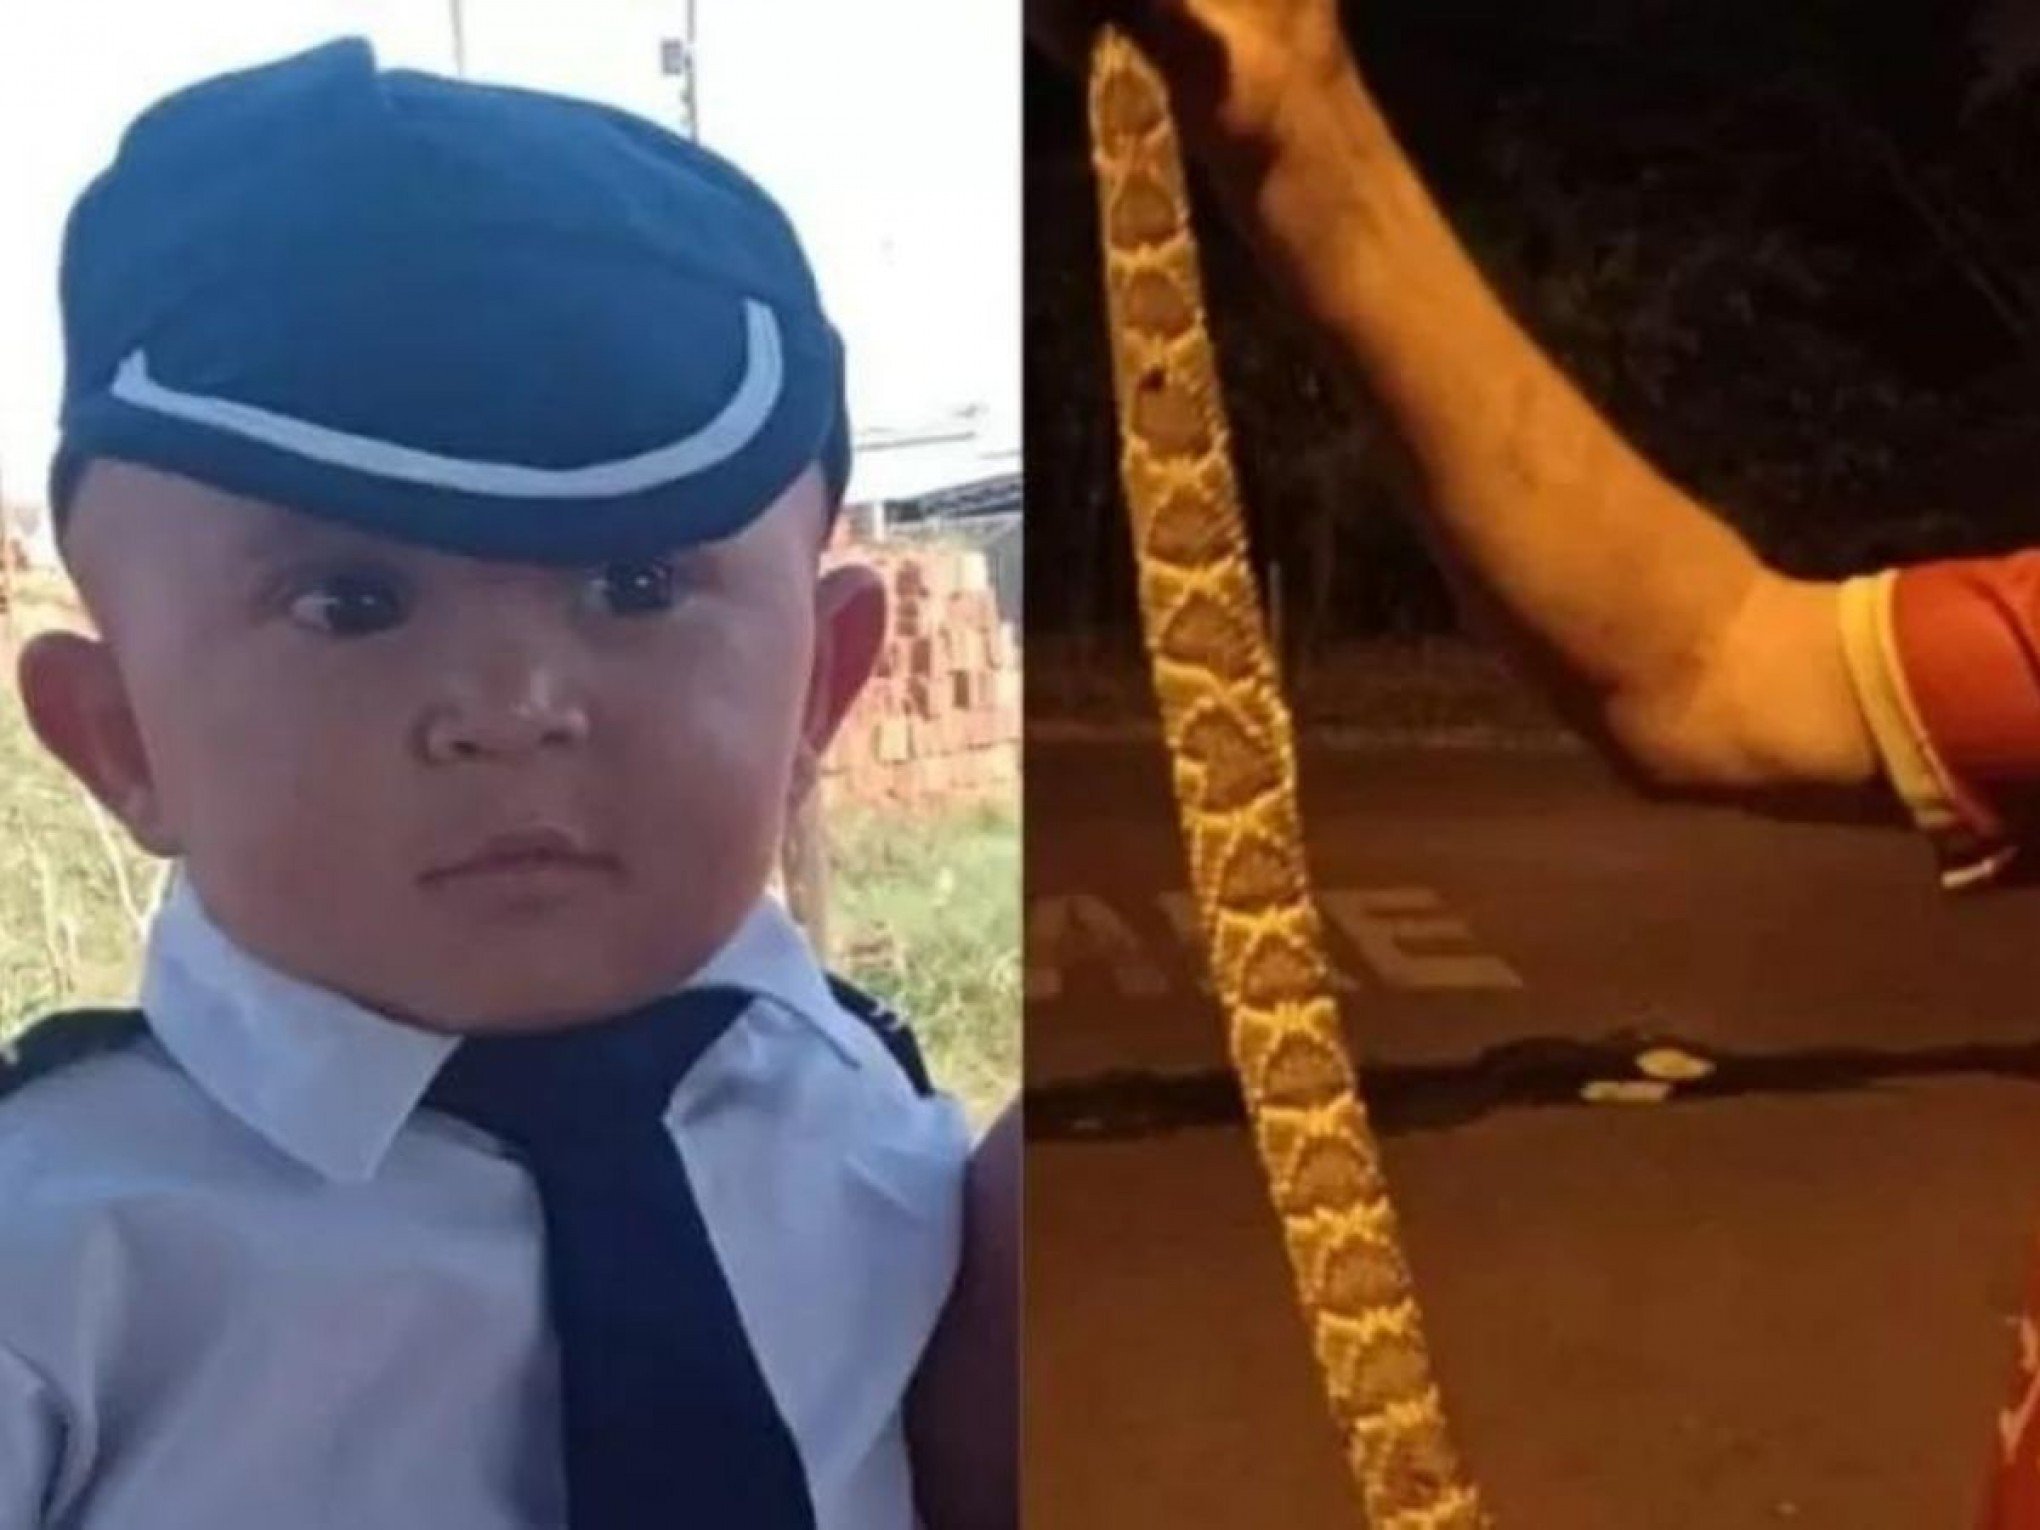 Menino de 2 anos morre após ser picado no tornozelo por cobra